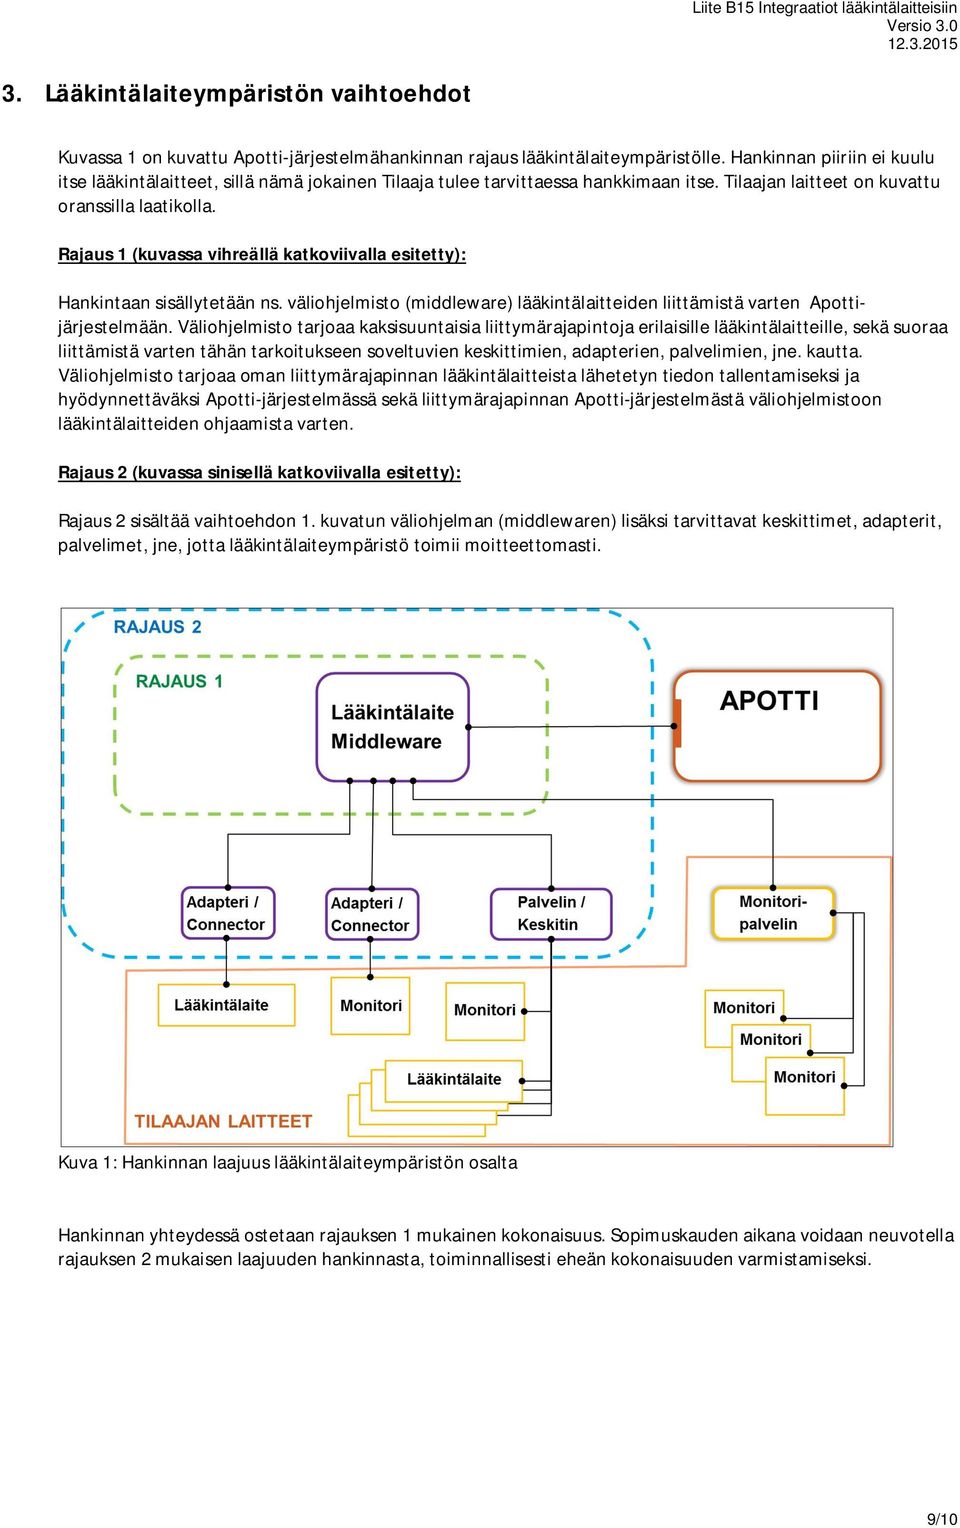 Rajaus 1 (kuvassa vihreällä katkoviivalla esitetty): Hankintaan sisällytetään ns. väliohjelmisto (middleware) lääkintälaitteiden liittämistä varten Apottijärjestelmään.